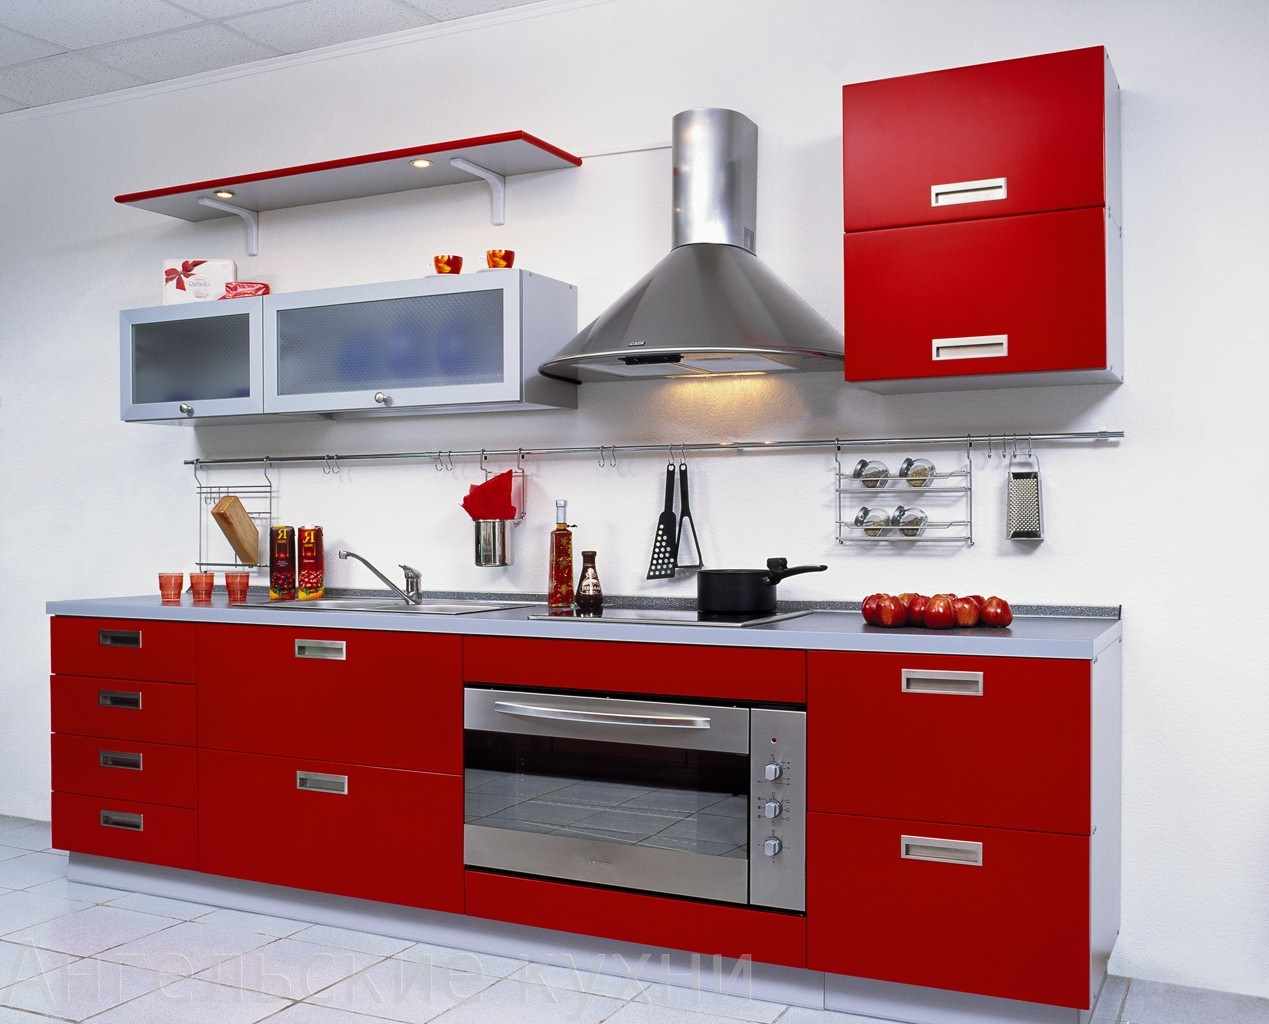 ett exempel på en ovanlig design av ett rött kök